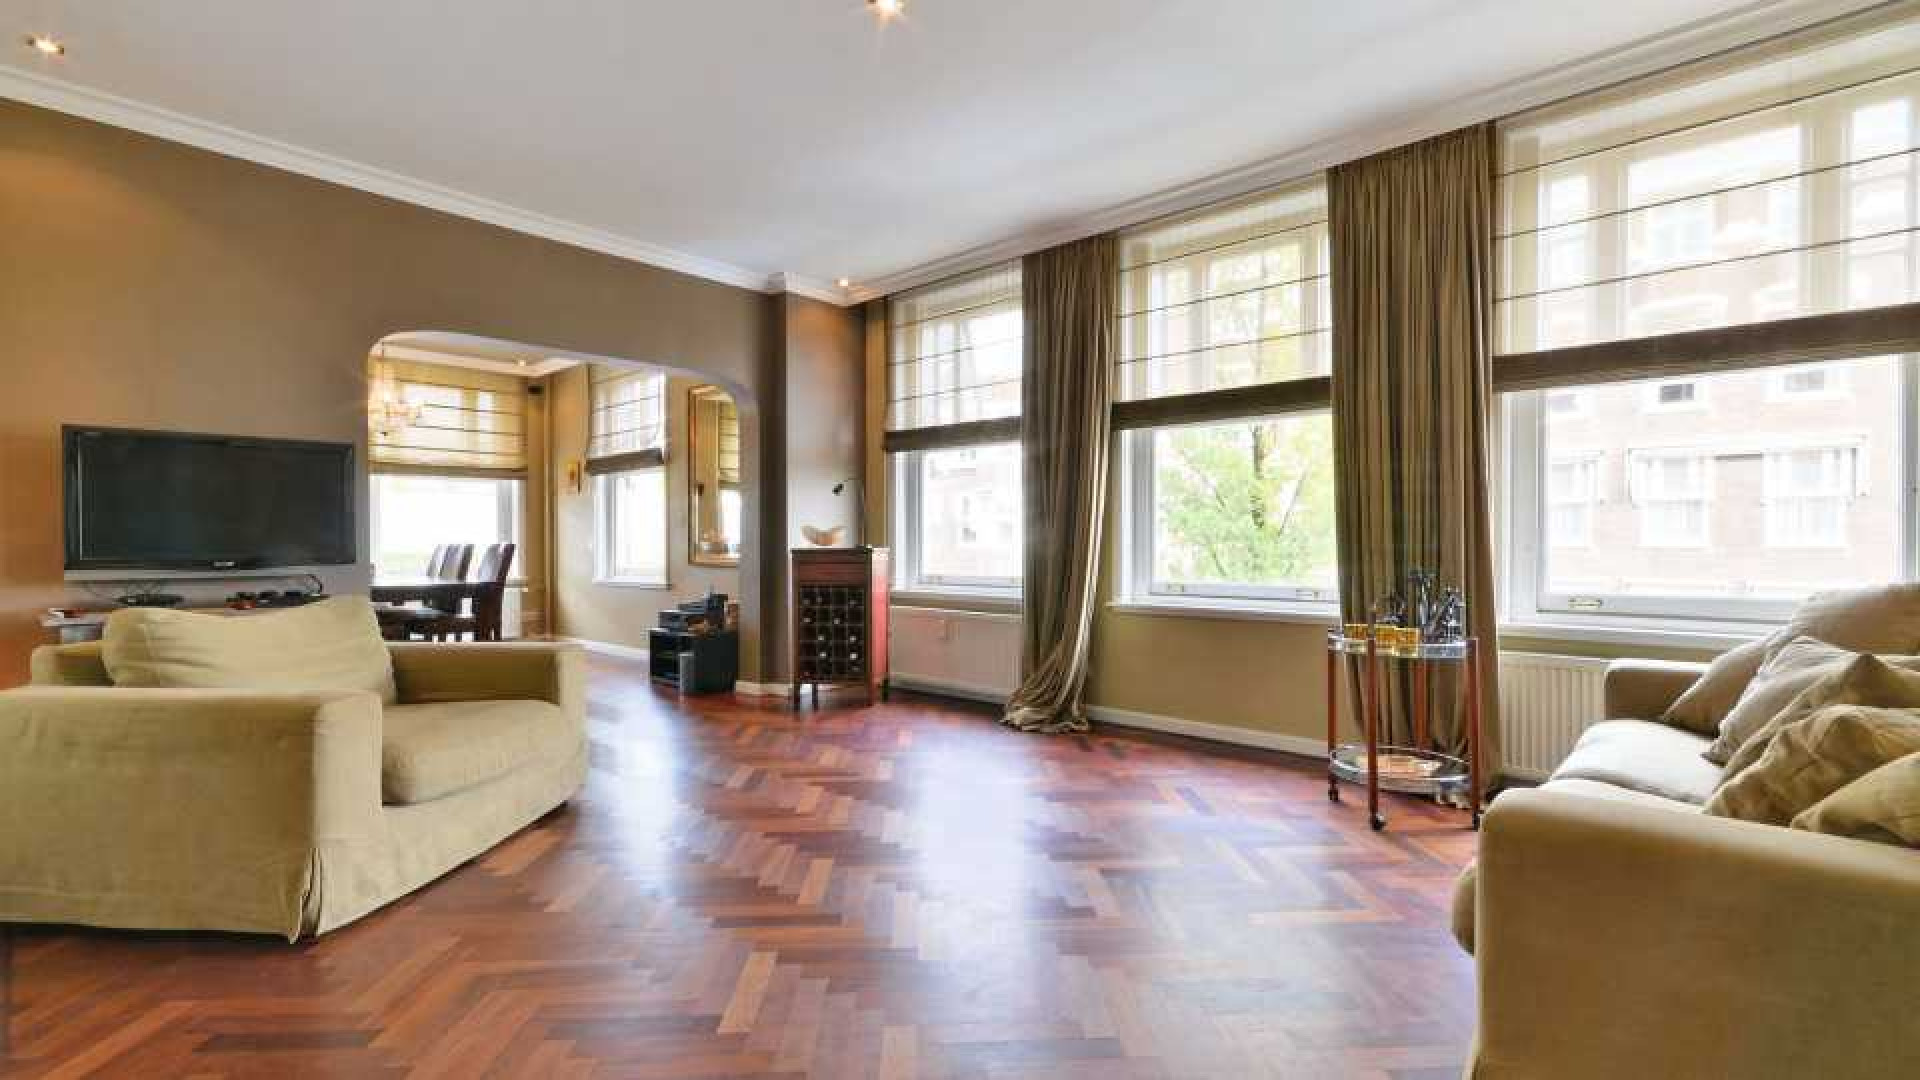 Chazia Mourali koopt met eigen geld luxe appartement in Amsterdam Zuid. Zie foto's